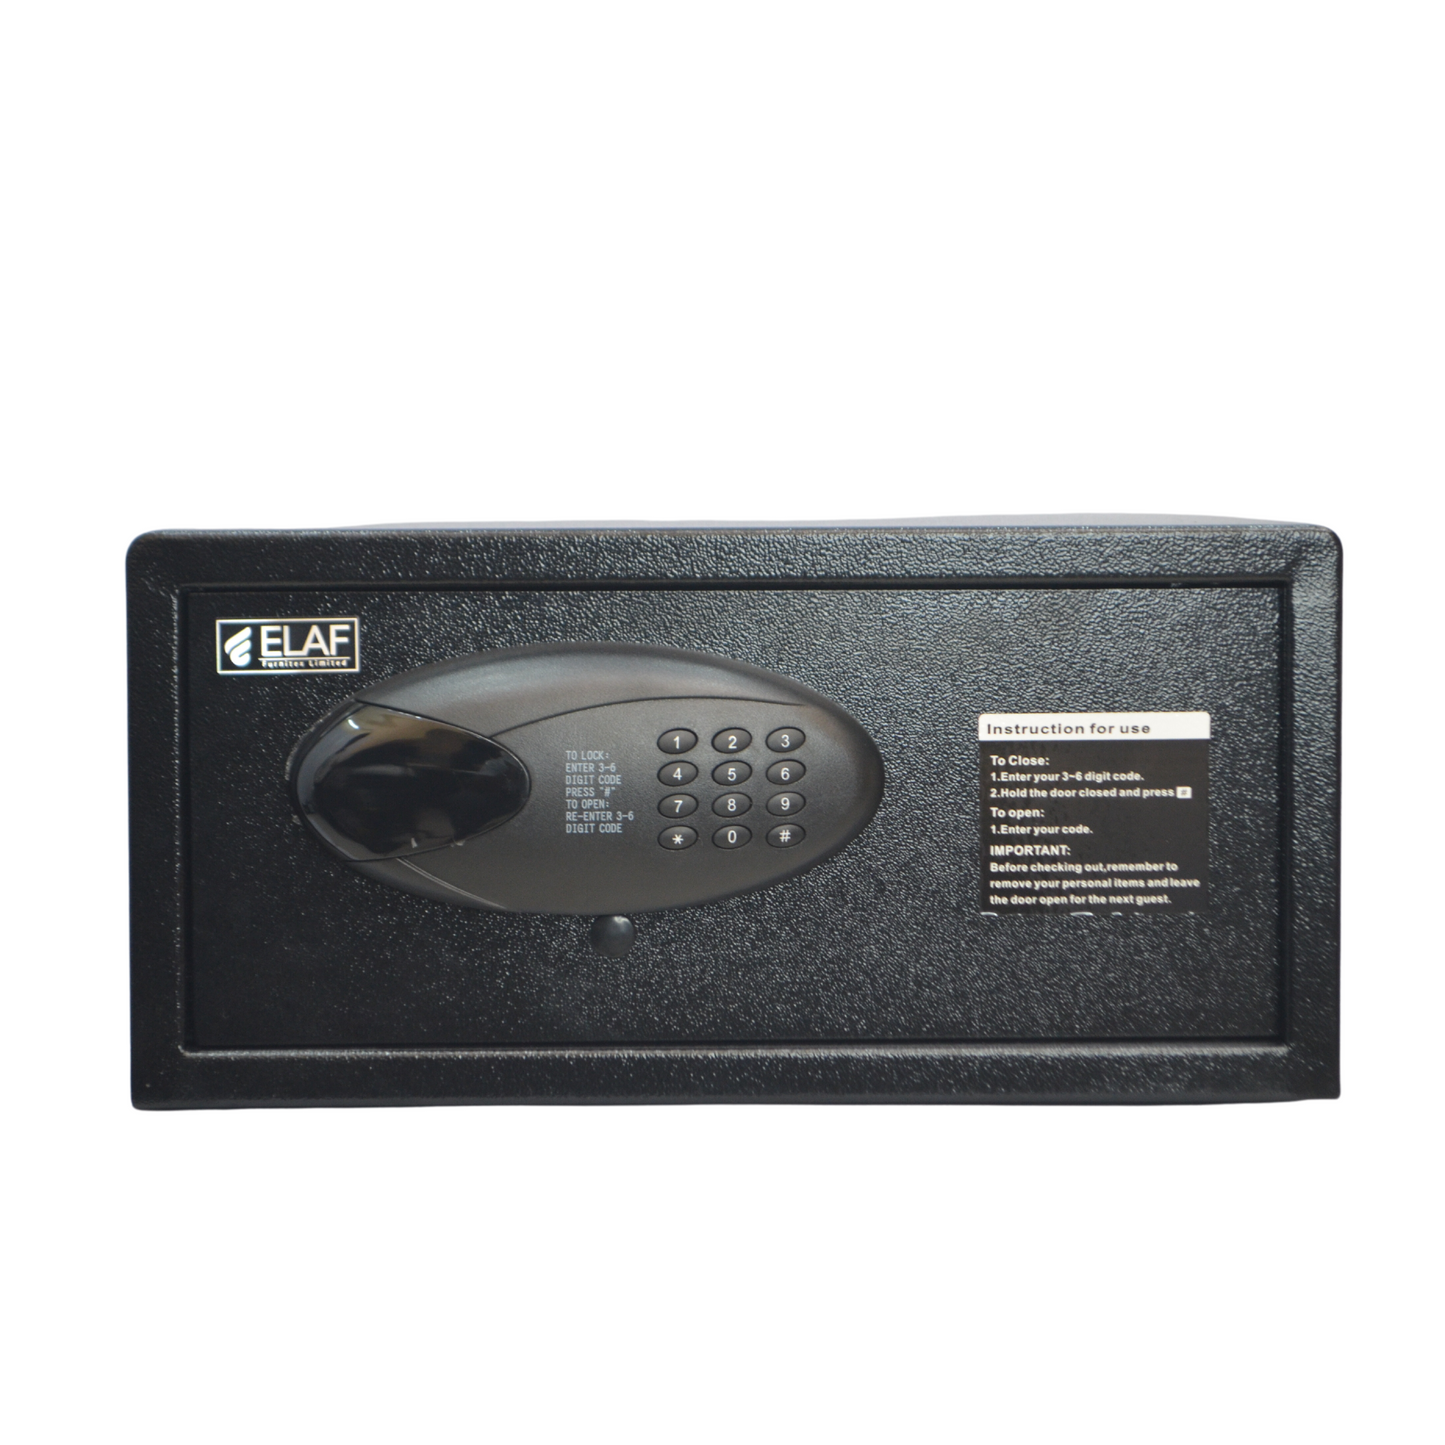 ELAF Digital Safety Locker (FT-BZ118)